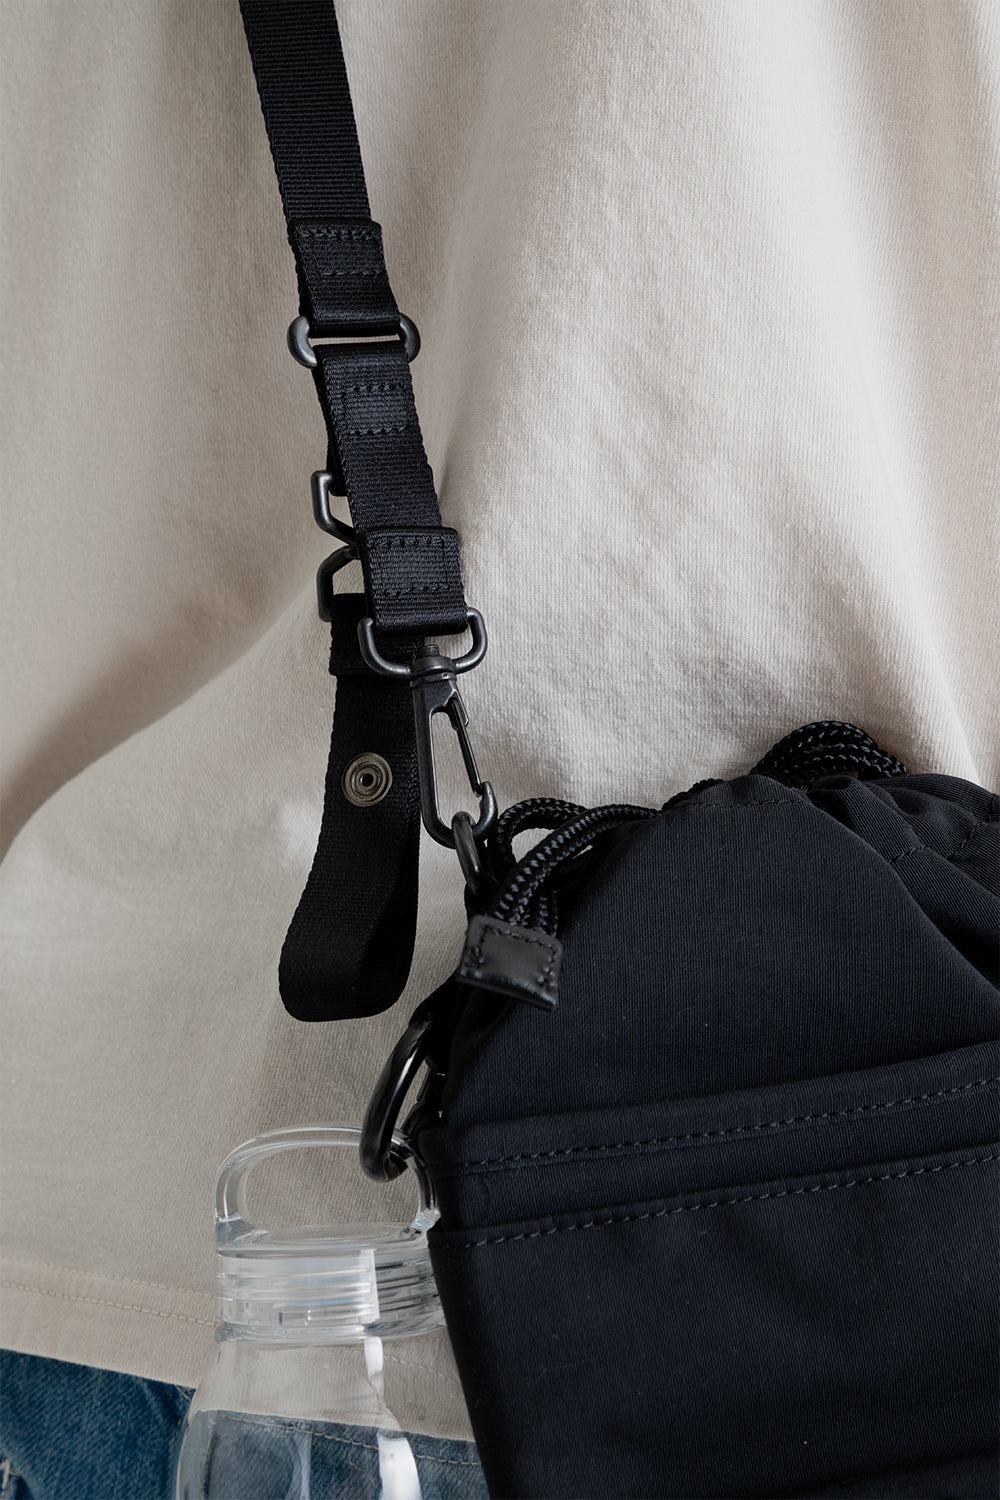 Kinto x Master-Piece Tea Bag Sa-Hou Small Shoulder Bag in Black